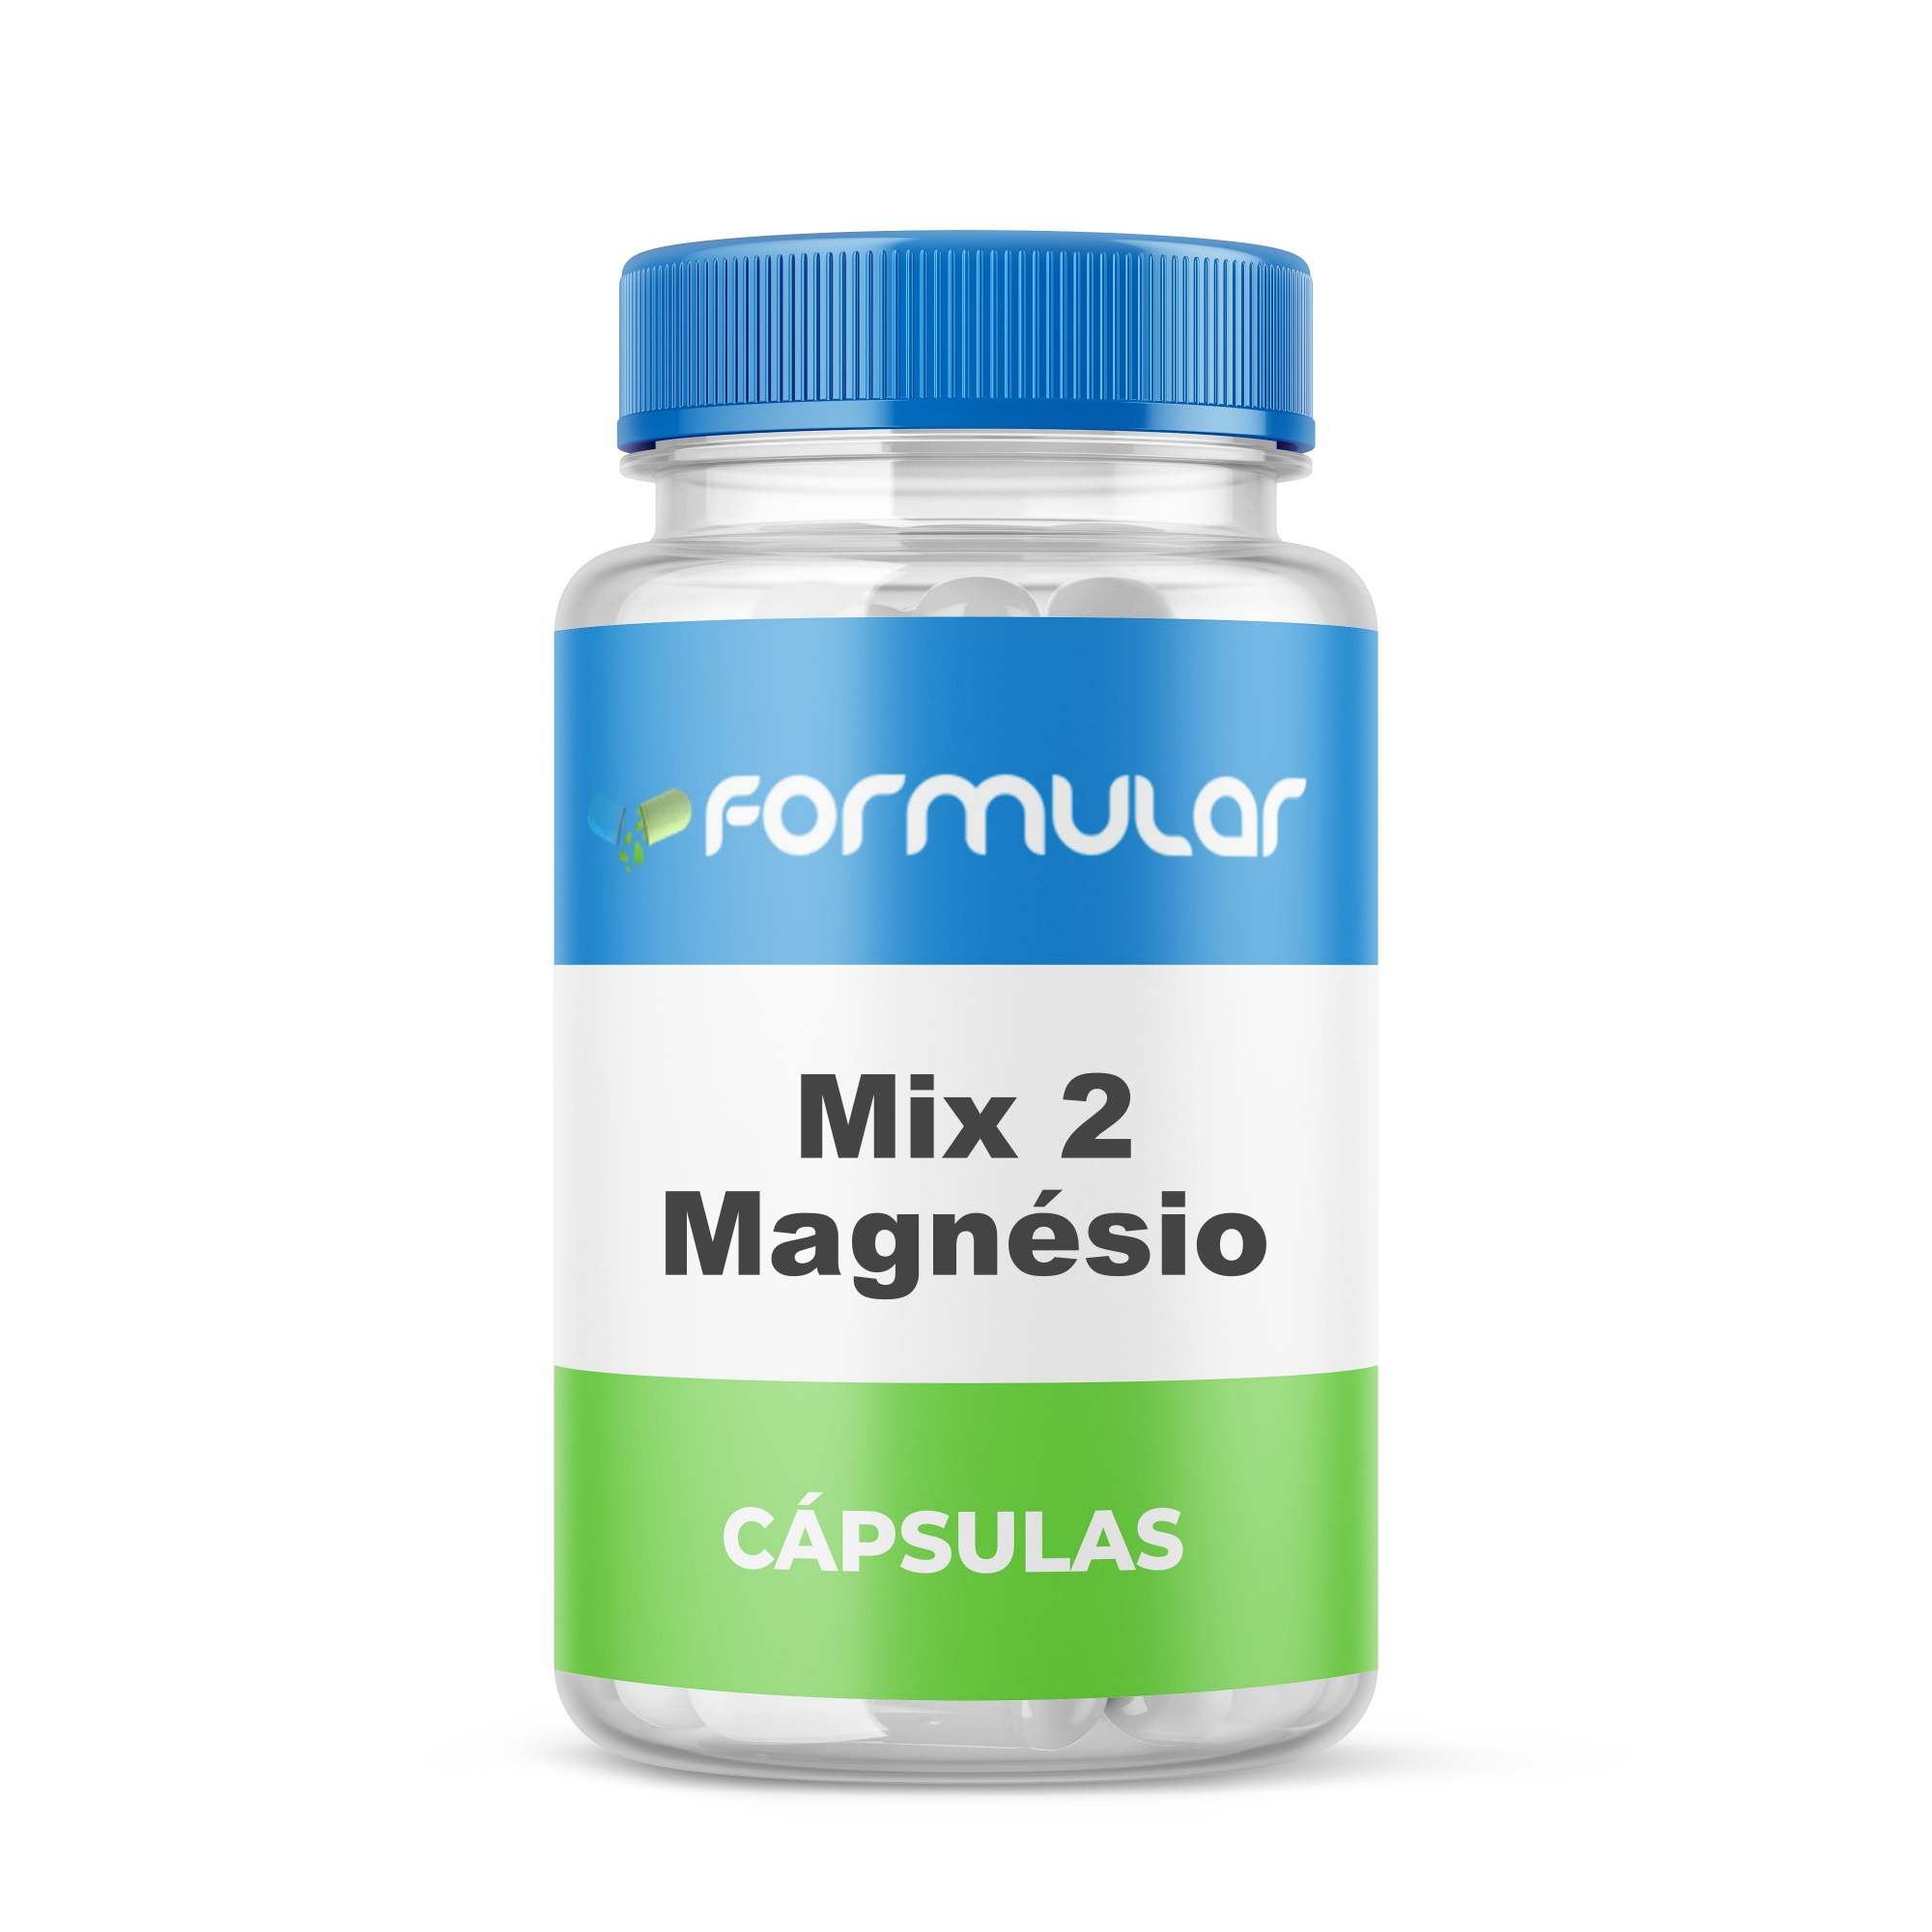 Mix 2 Magnésio - Super Cerebral - 60 Cápsulas  (Treonato + Taurato)